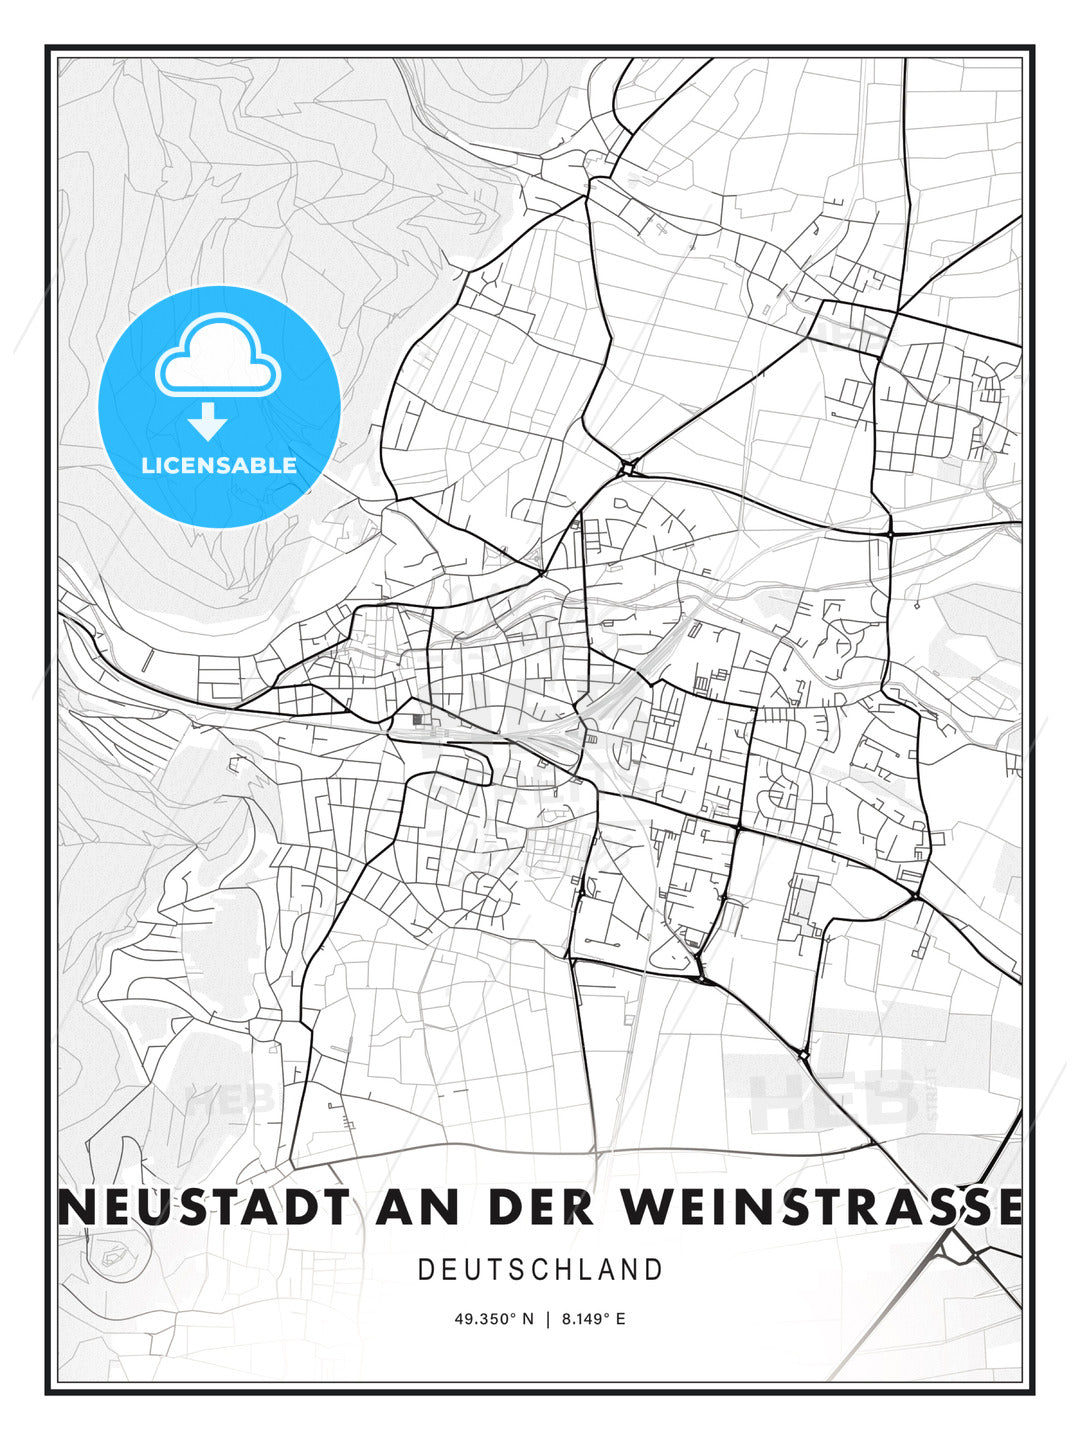 NEUSTADT AN DER WEINSTRASSE / Neustadt an der Weinstraße, Germany, Modern Print Template in Various Formats - HEBSTREITS Sketches